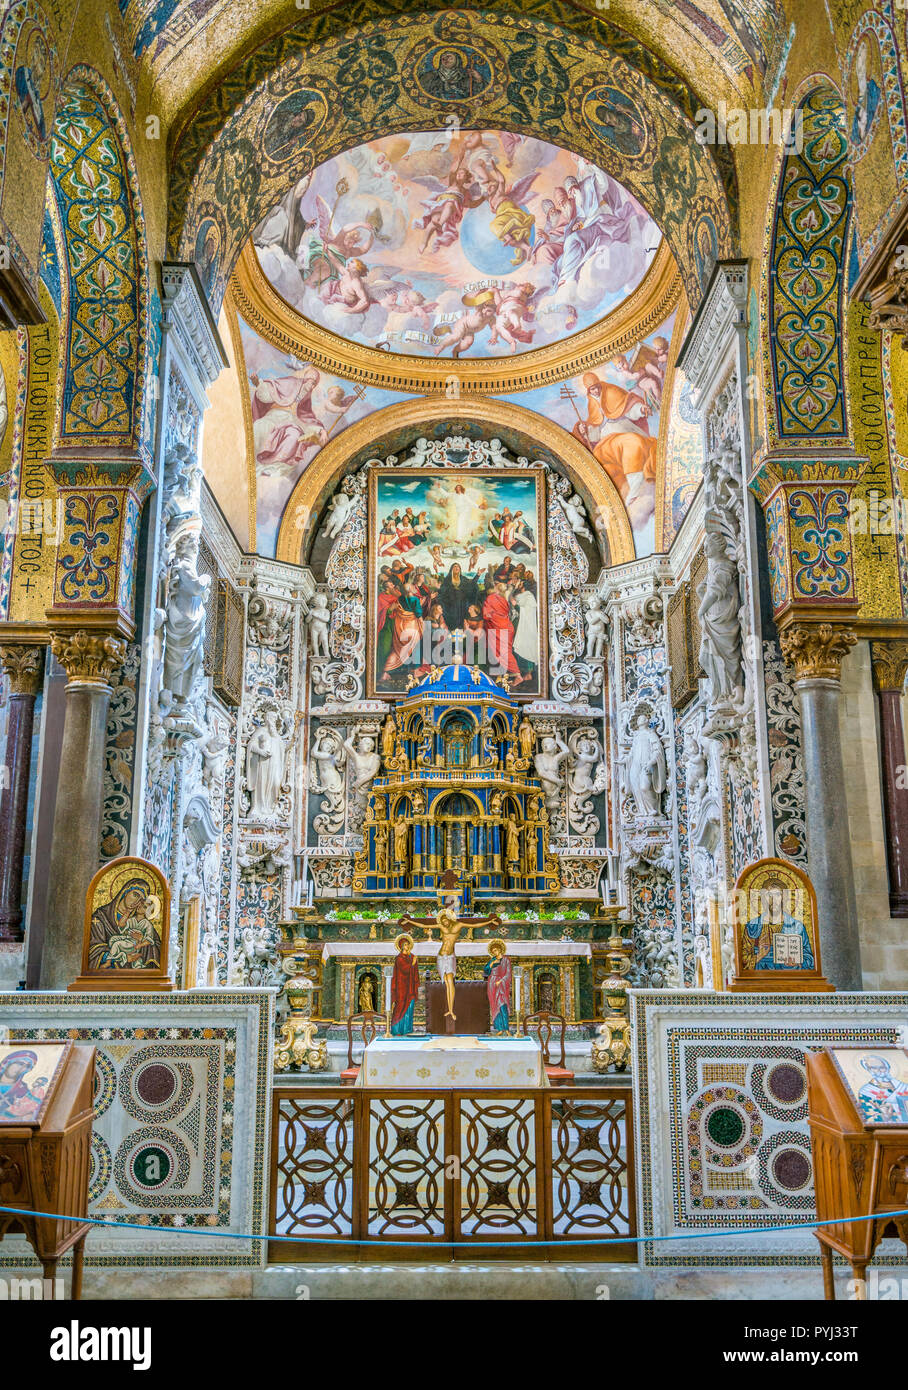 Autel principal dans la Martorana (Cathédrale de Sainte Marie de l'amiral) à Palerme. Sicile, Italie. Banque D'Images